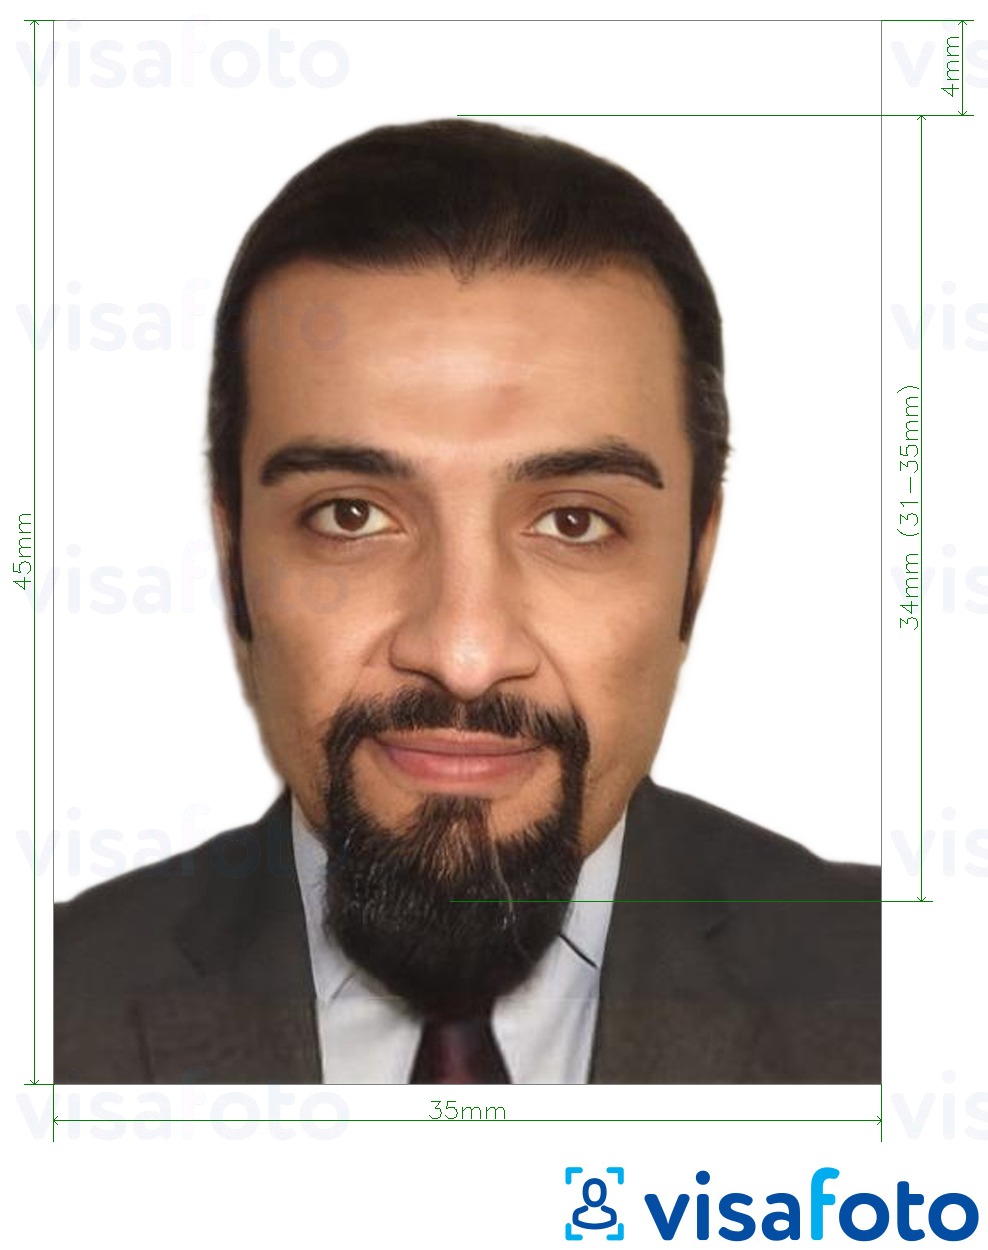 Exemple de foto per a Llibre de família dels Emirats Àrabs Units 35x45 mm amb la mida exacta especificada